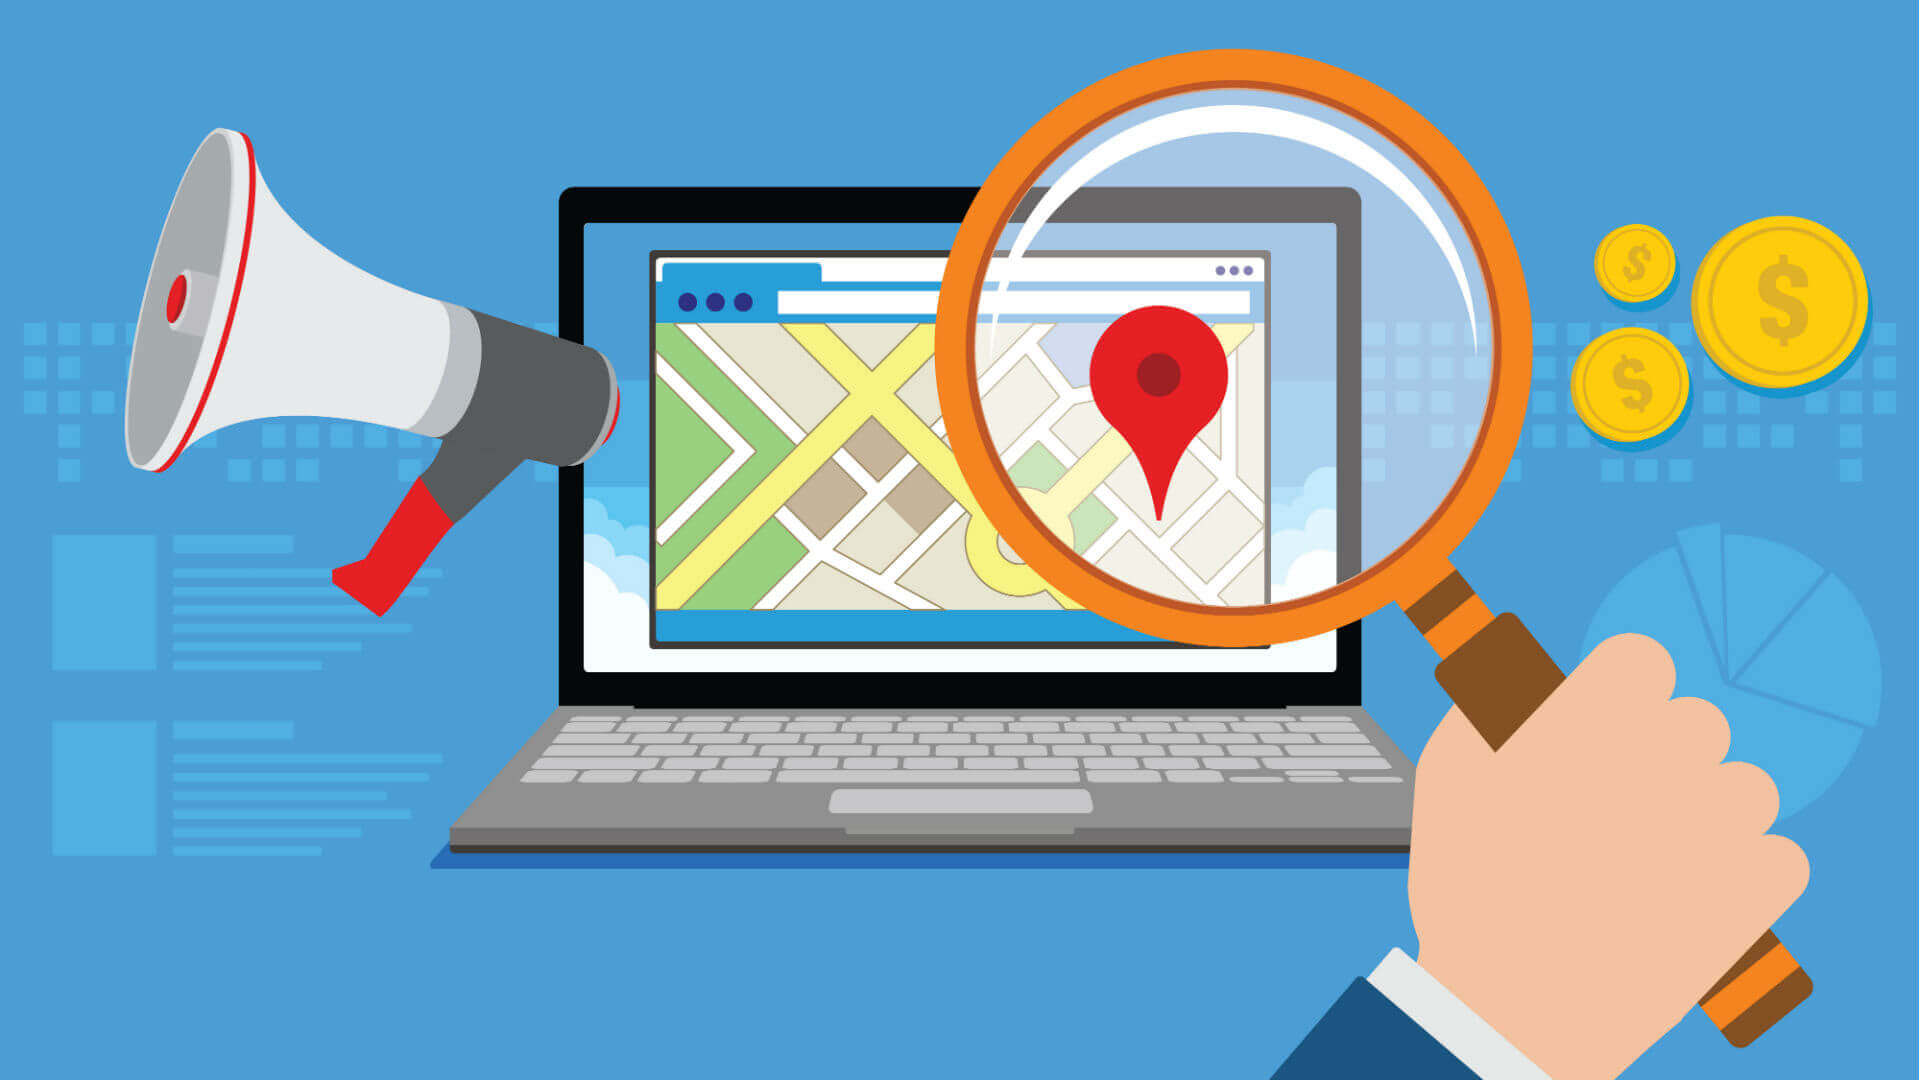 Local search giúp định vị chính xác địa điểm mà bạn tìm kiếm